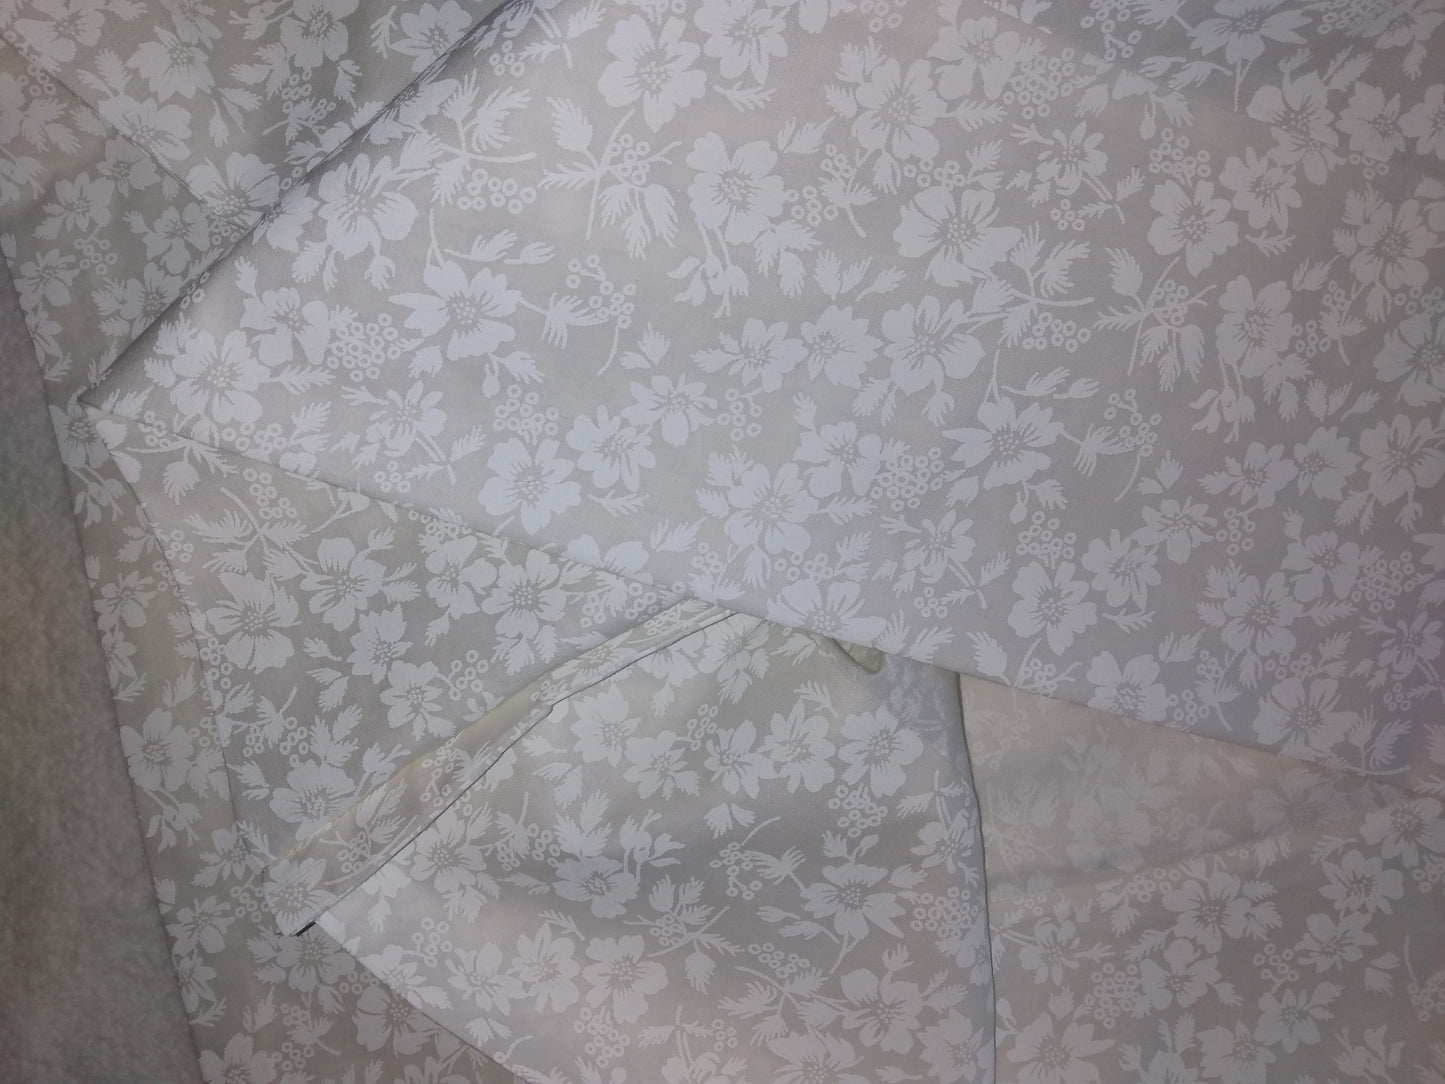 100% Cotton Pillowcase White Floral White on White